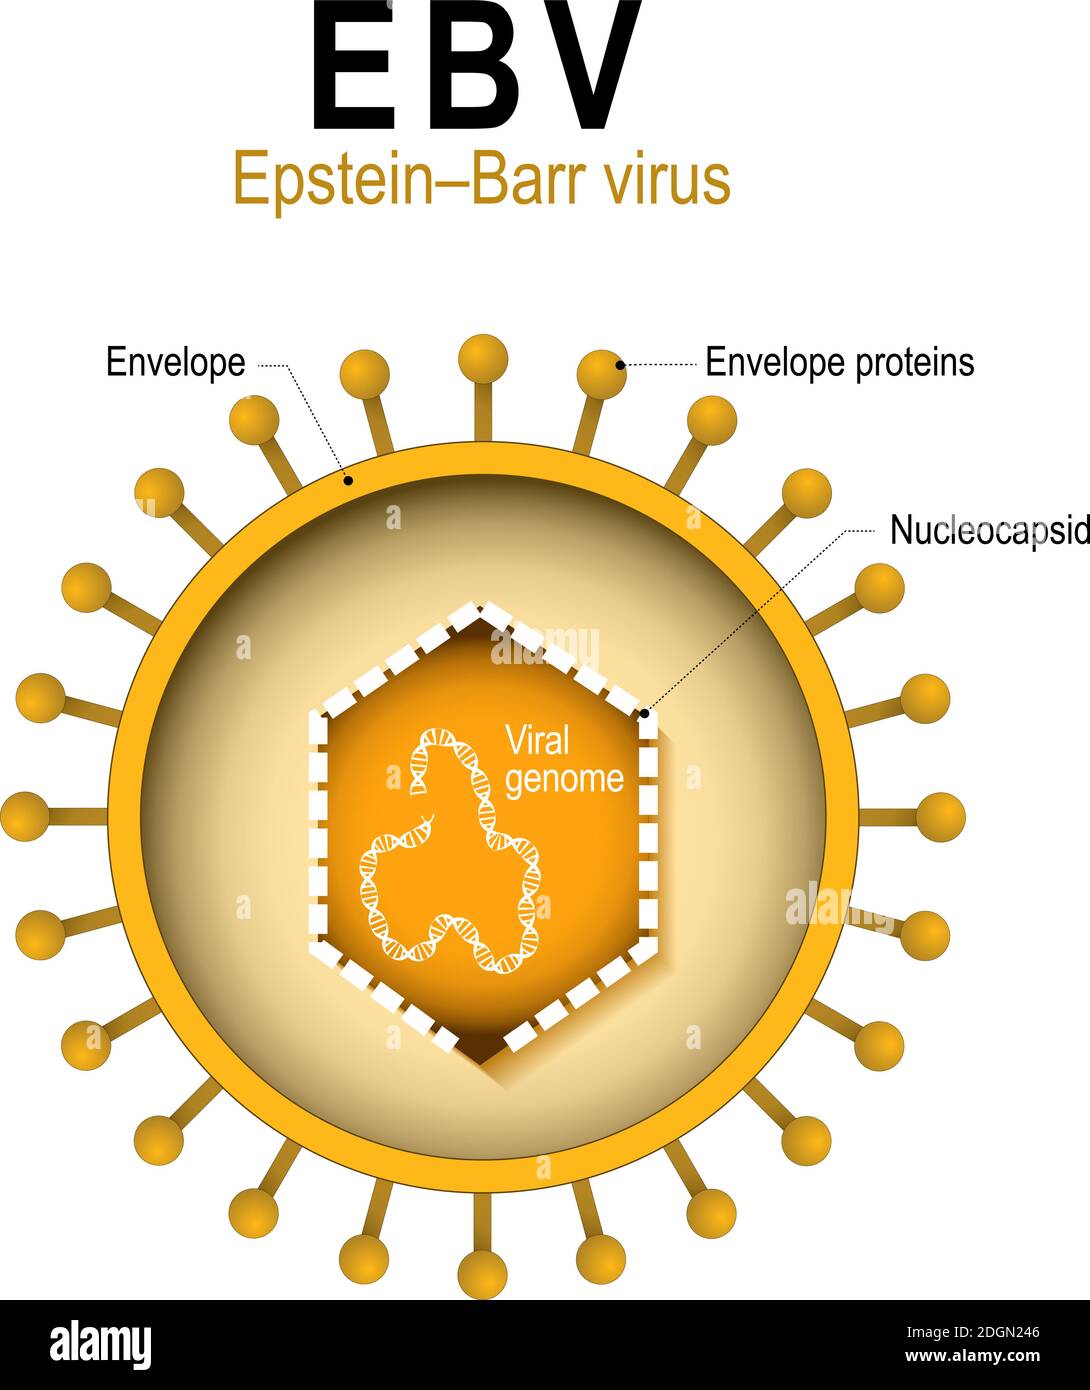 Virus d'Epstein–Barr (EBV). Herpèsvirus humain 4 (HHV). Diagramme de la structure du virus de l'herpès humain. Cause de la mononucléose infectieuse et du cancer Illustration de Vecteur